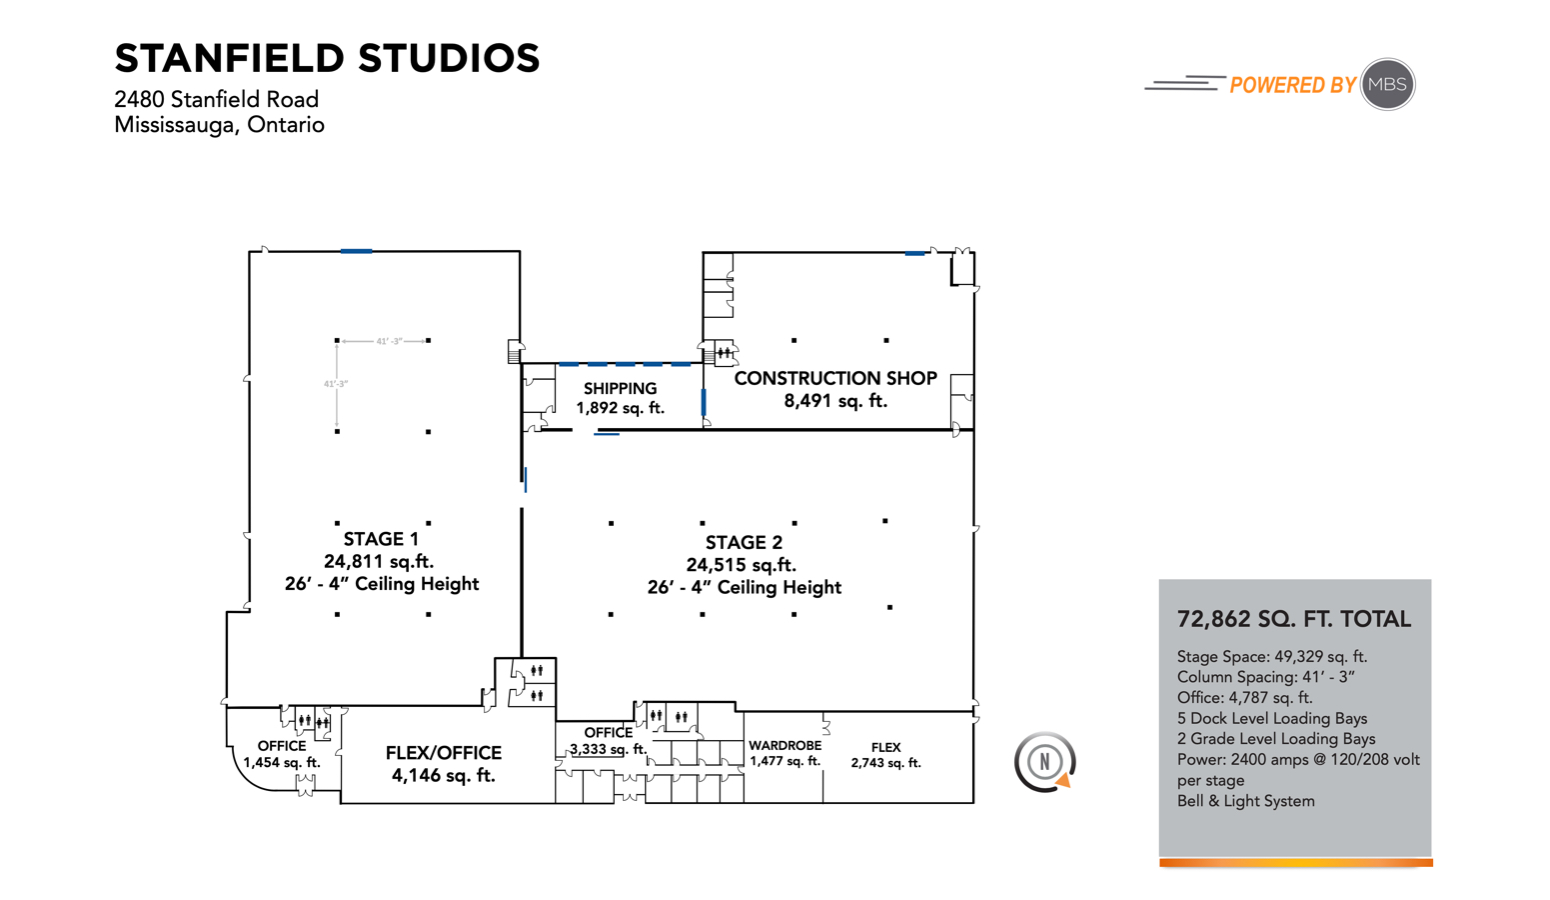 Stanfield Studios Floorplan - MBS Canada